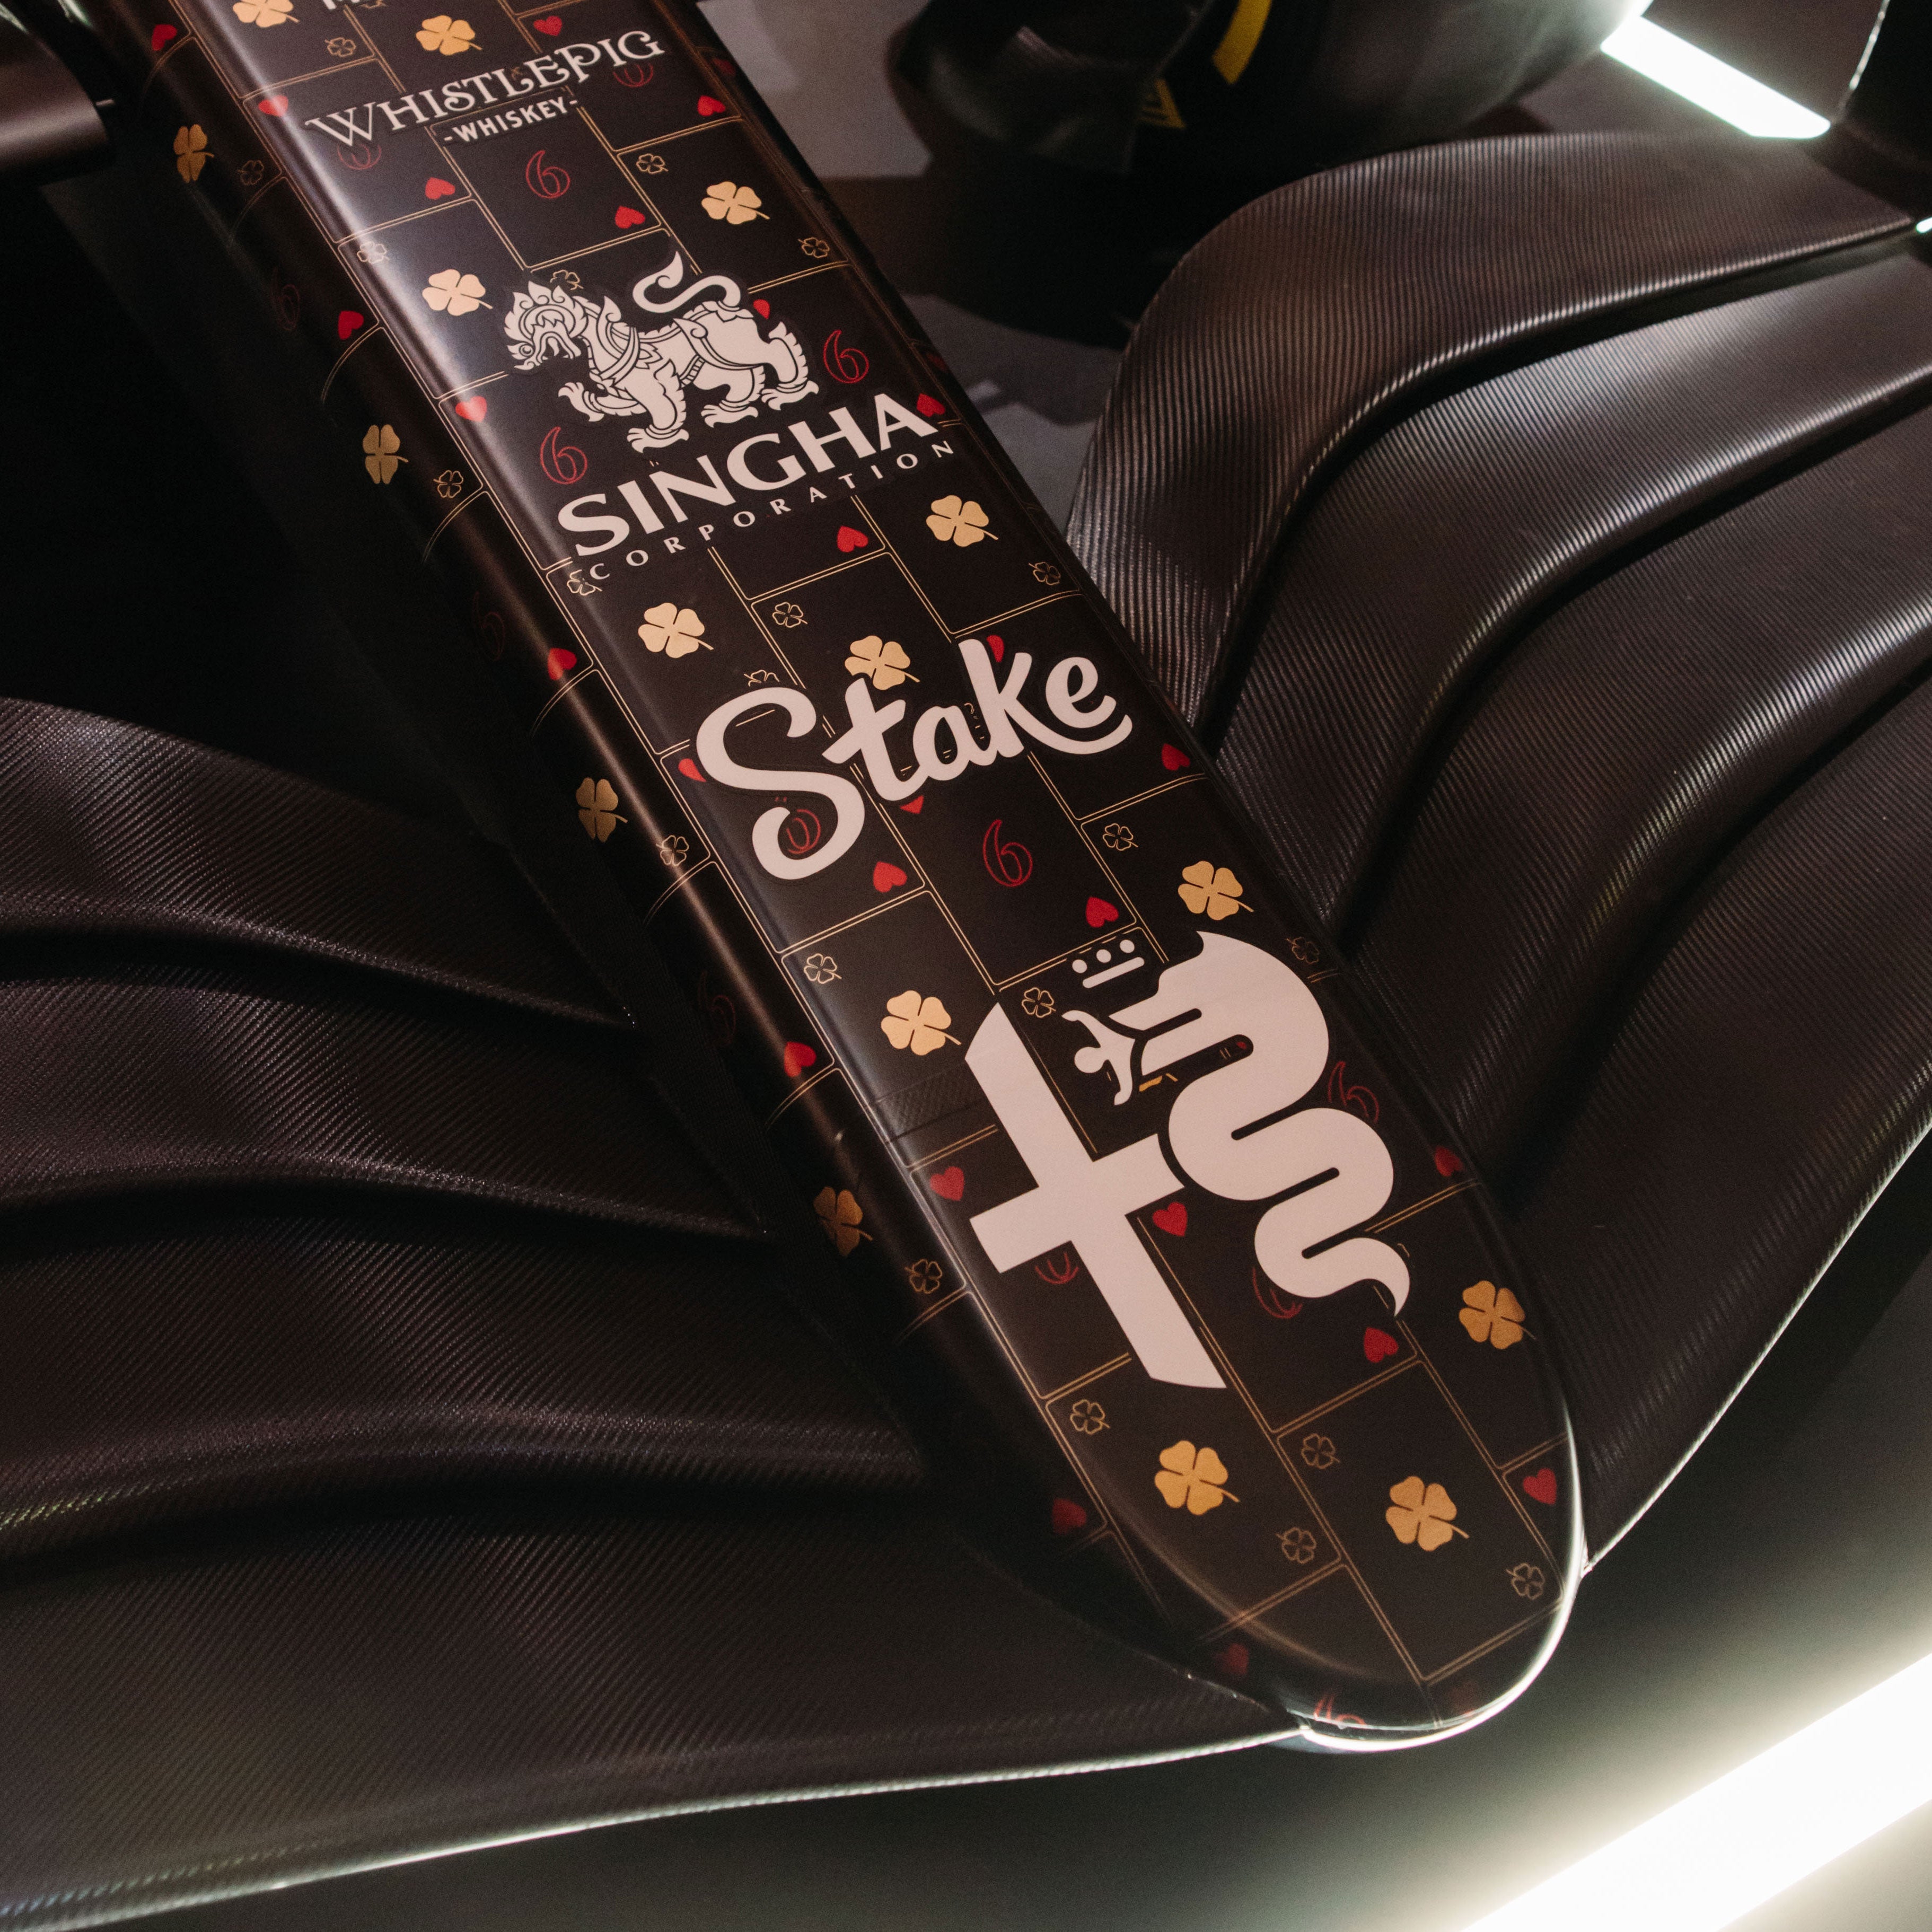 2023 Alfa Romeo F1® Team Stake C43 Official Vegas Livery Show Car